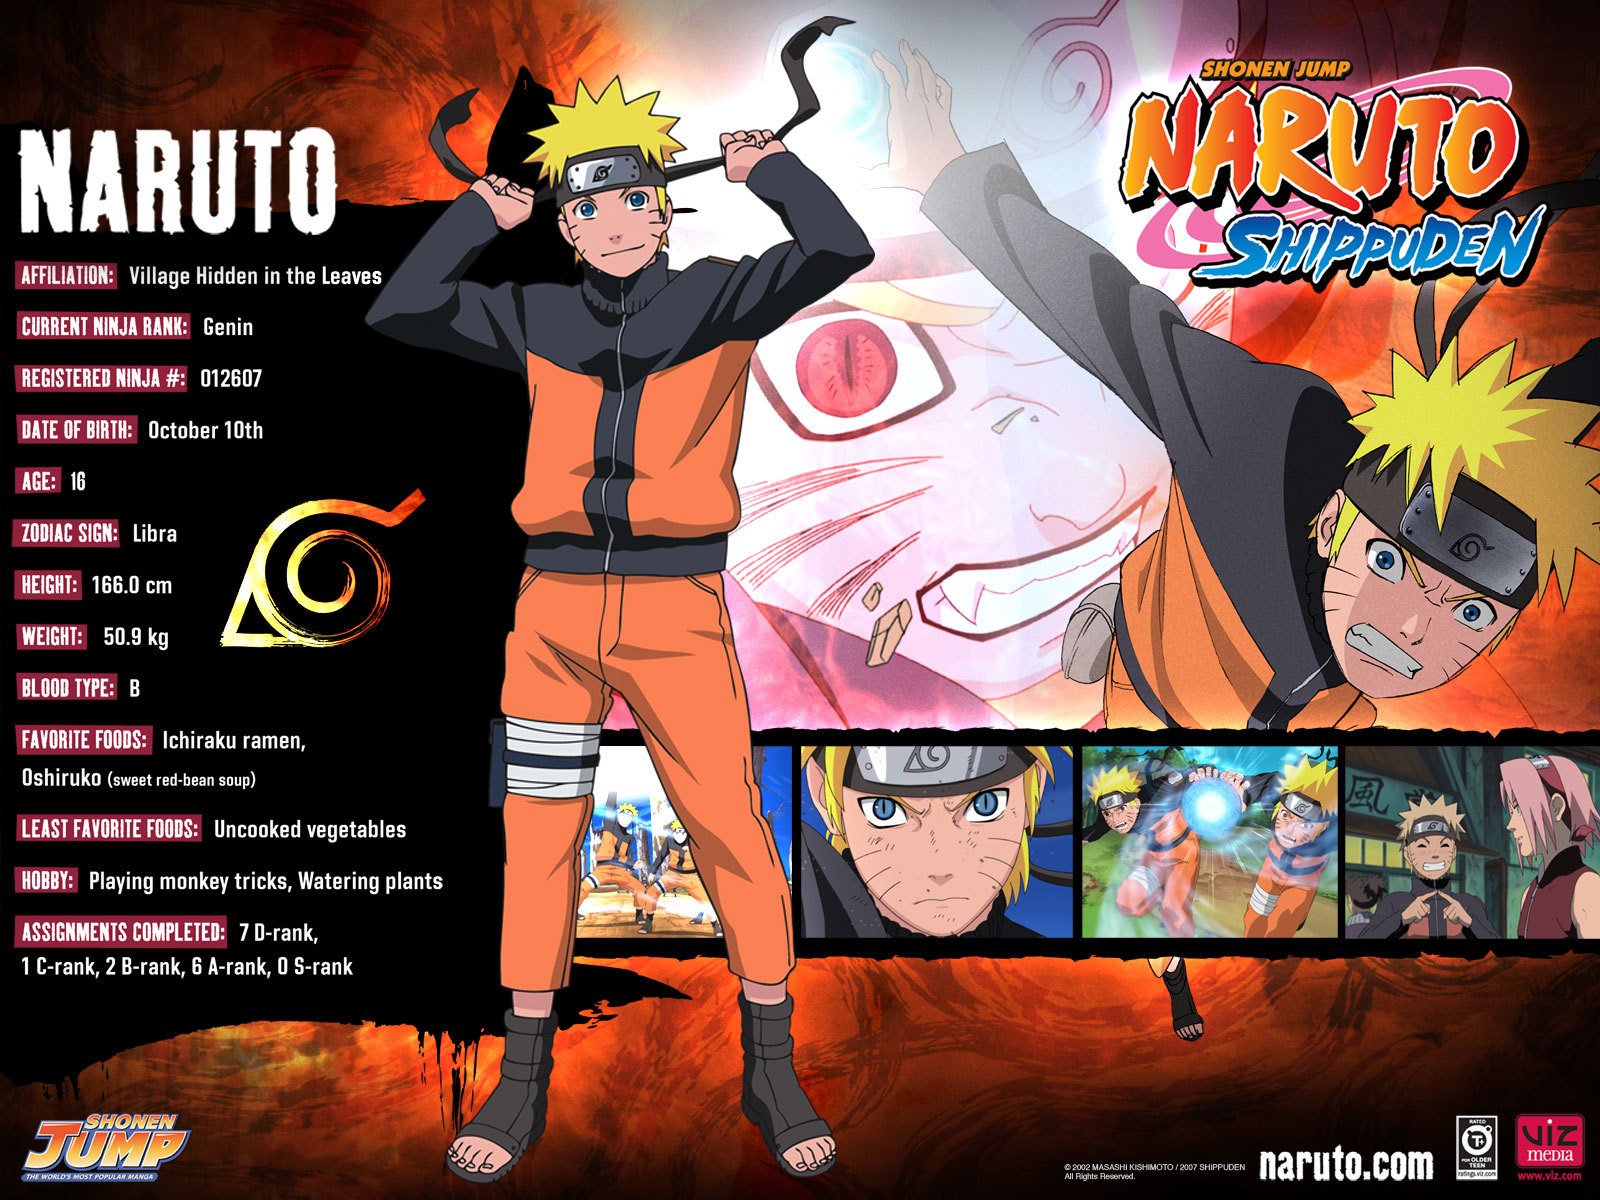 NarutoShippuden And Naruto Shippuden Wallpaper